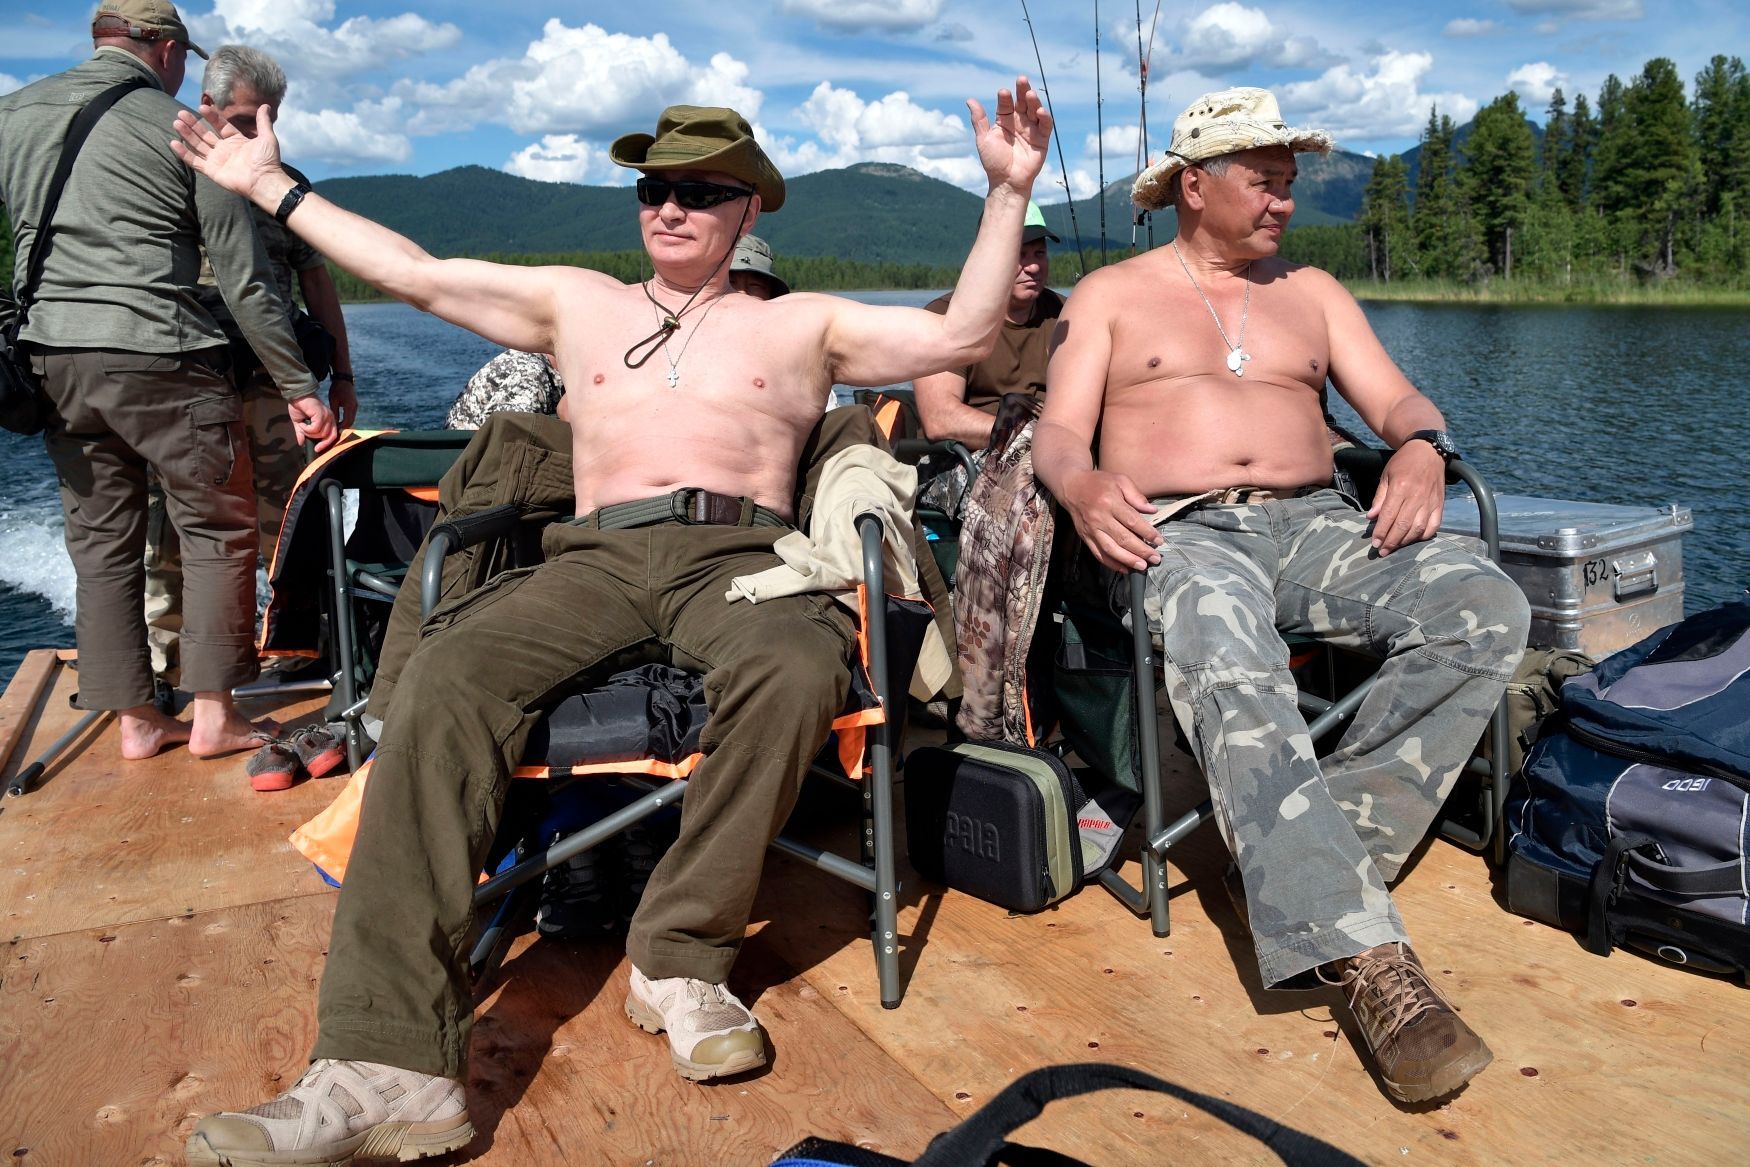 Putin na dovolené